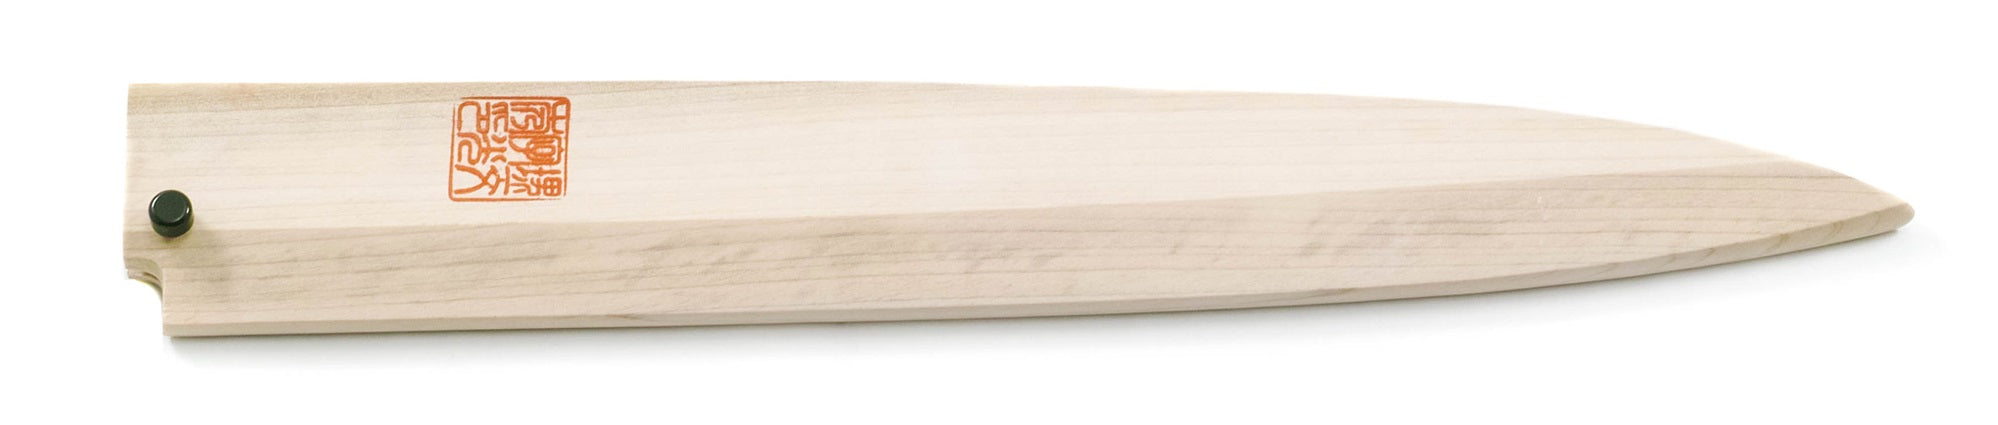 Fodero in legno per coltello Fugubiki